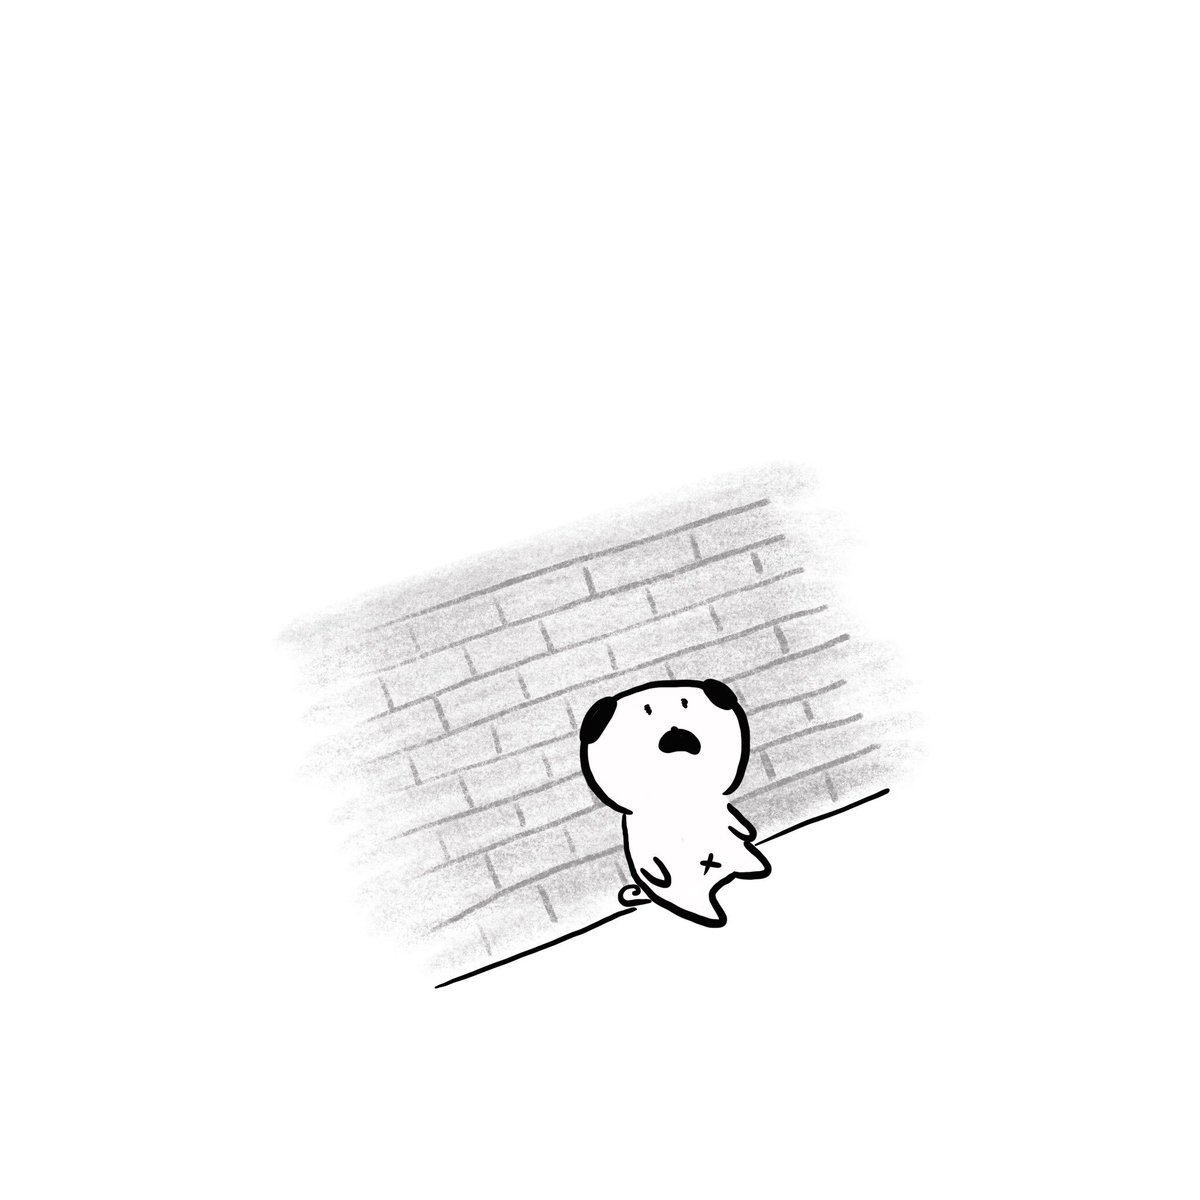 Marubooo まるぼー V Twitter お疲れ様 絵描きさんと繋がりたい イラスト好きな人と繋がりたい Pug パグ イラスト マンガ まぬけん いぬ 毎日 毎日投稿 Illustration Illustrator Mydrawing 可愛い かわいい ゆるい 犬 キャラクター